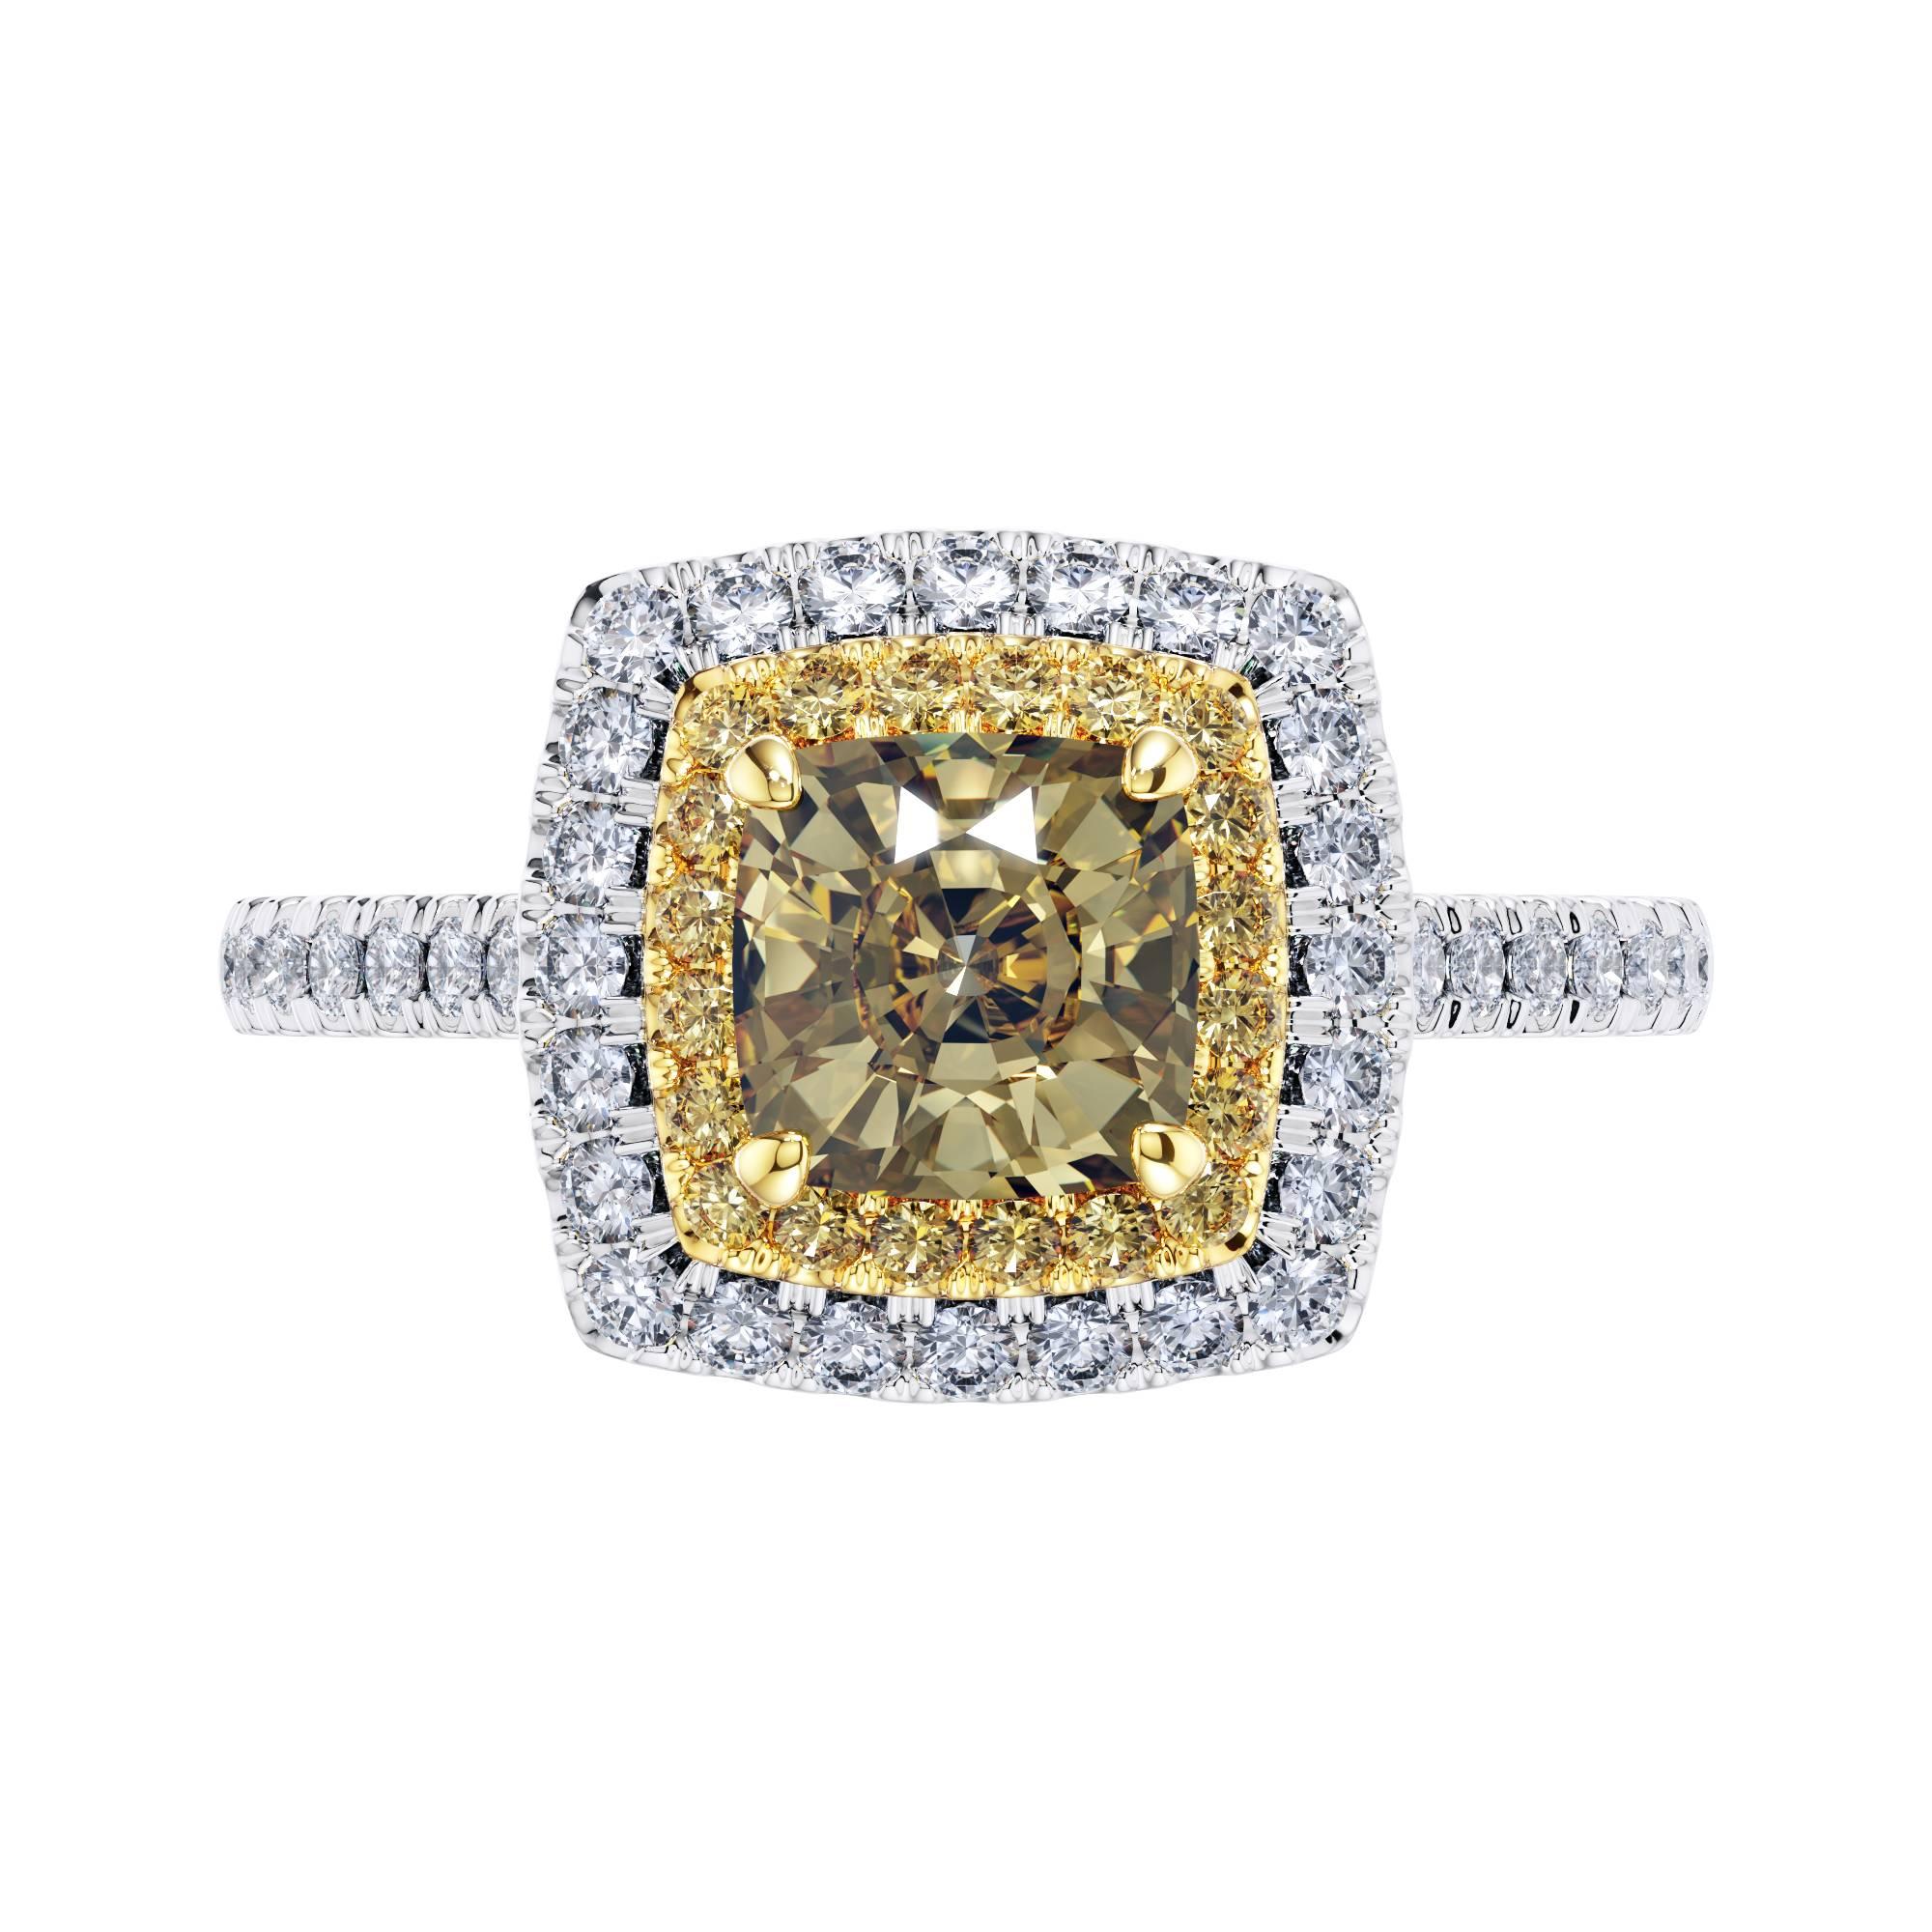 GIA Certified 1.56 Carat Yellow Diamond 18 Karat White Gold Ring